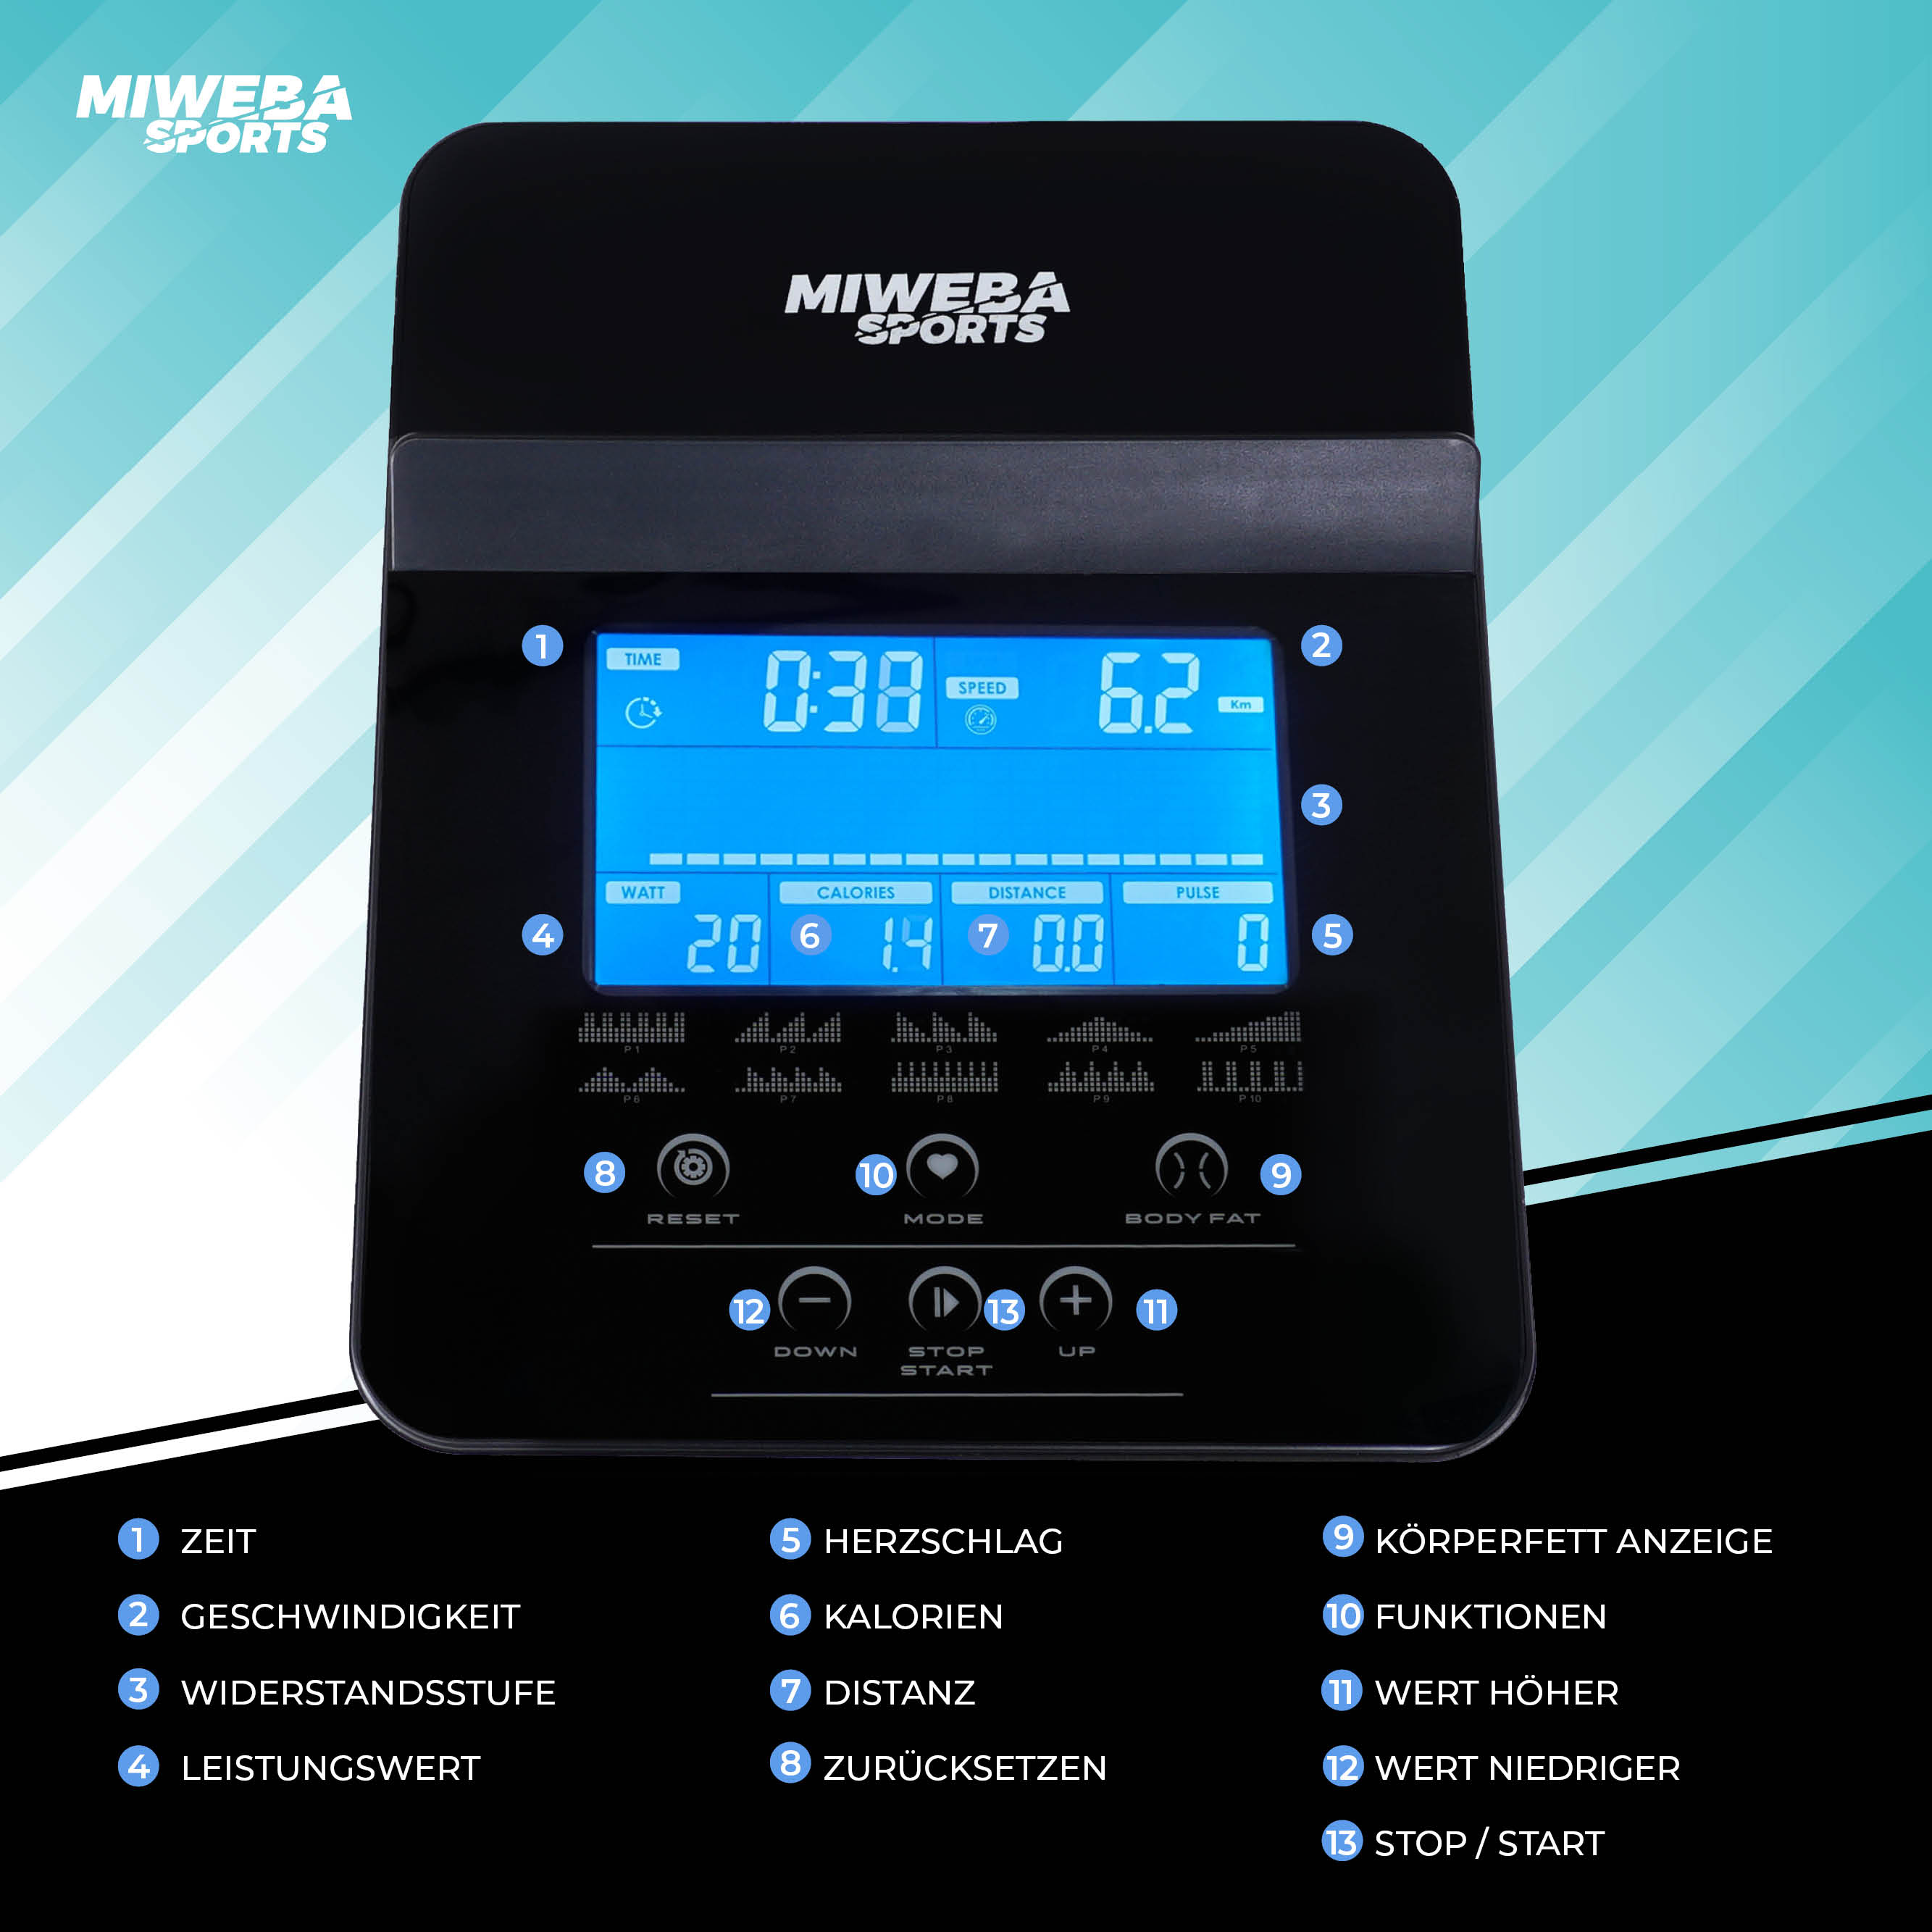 Miweba Sports Ergometer ME500 Trainingscomputer